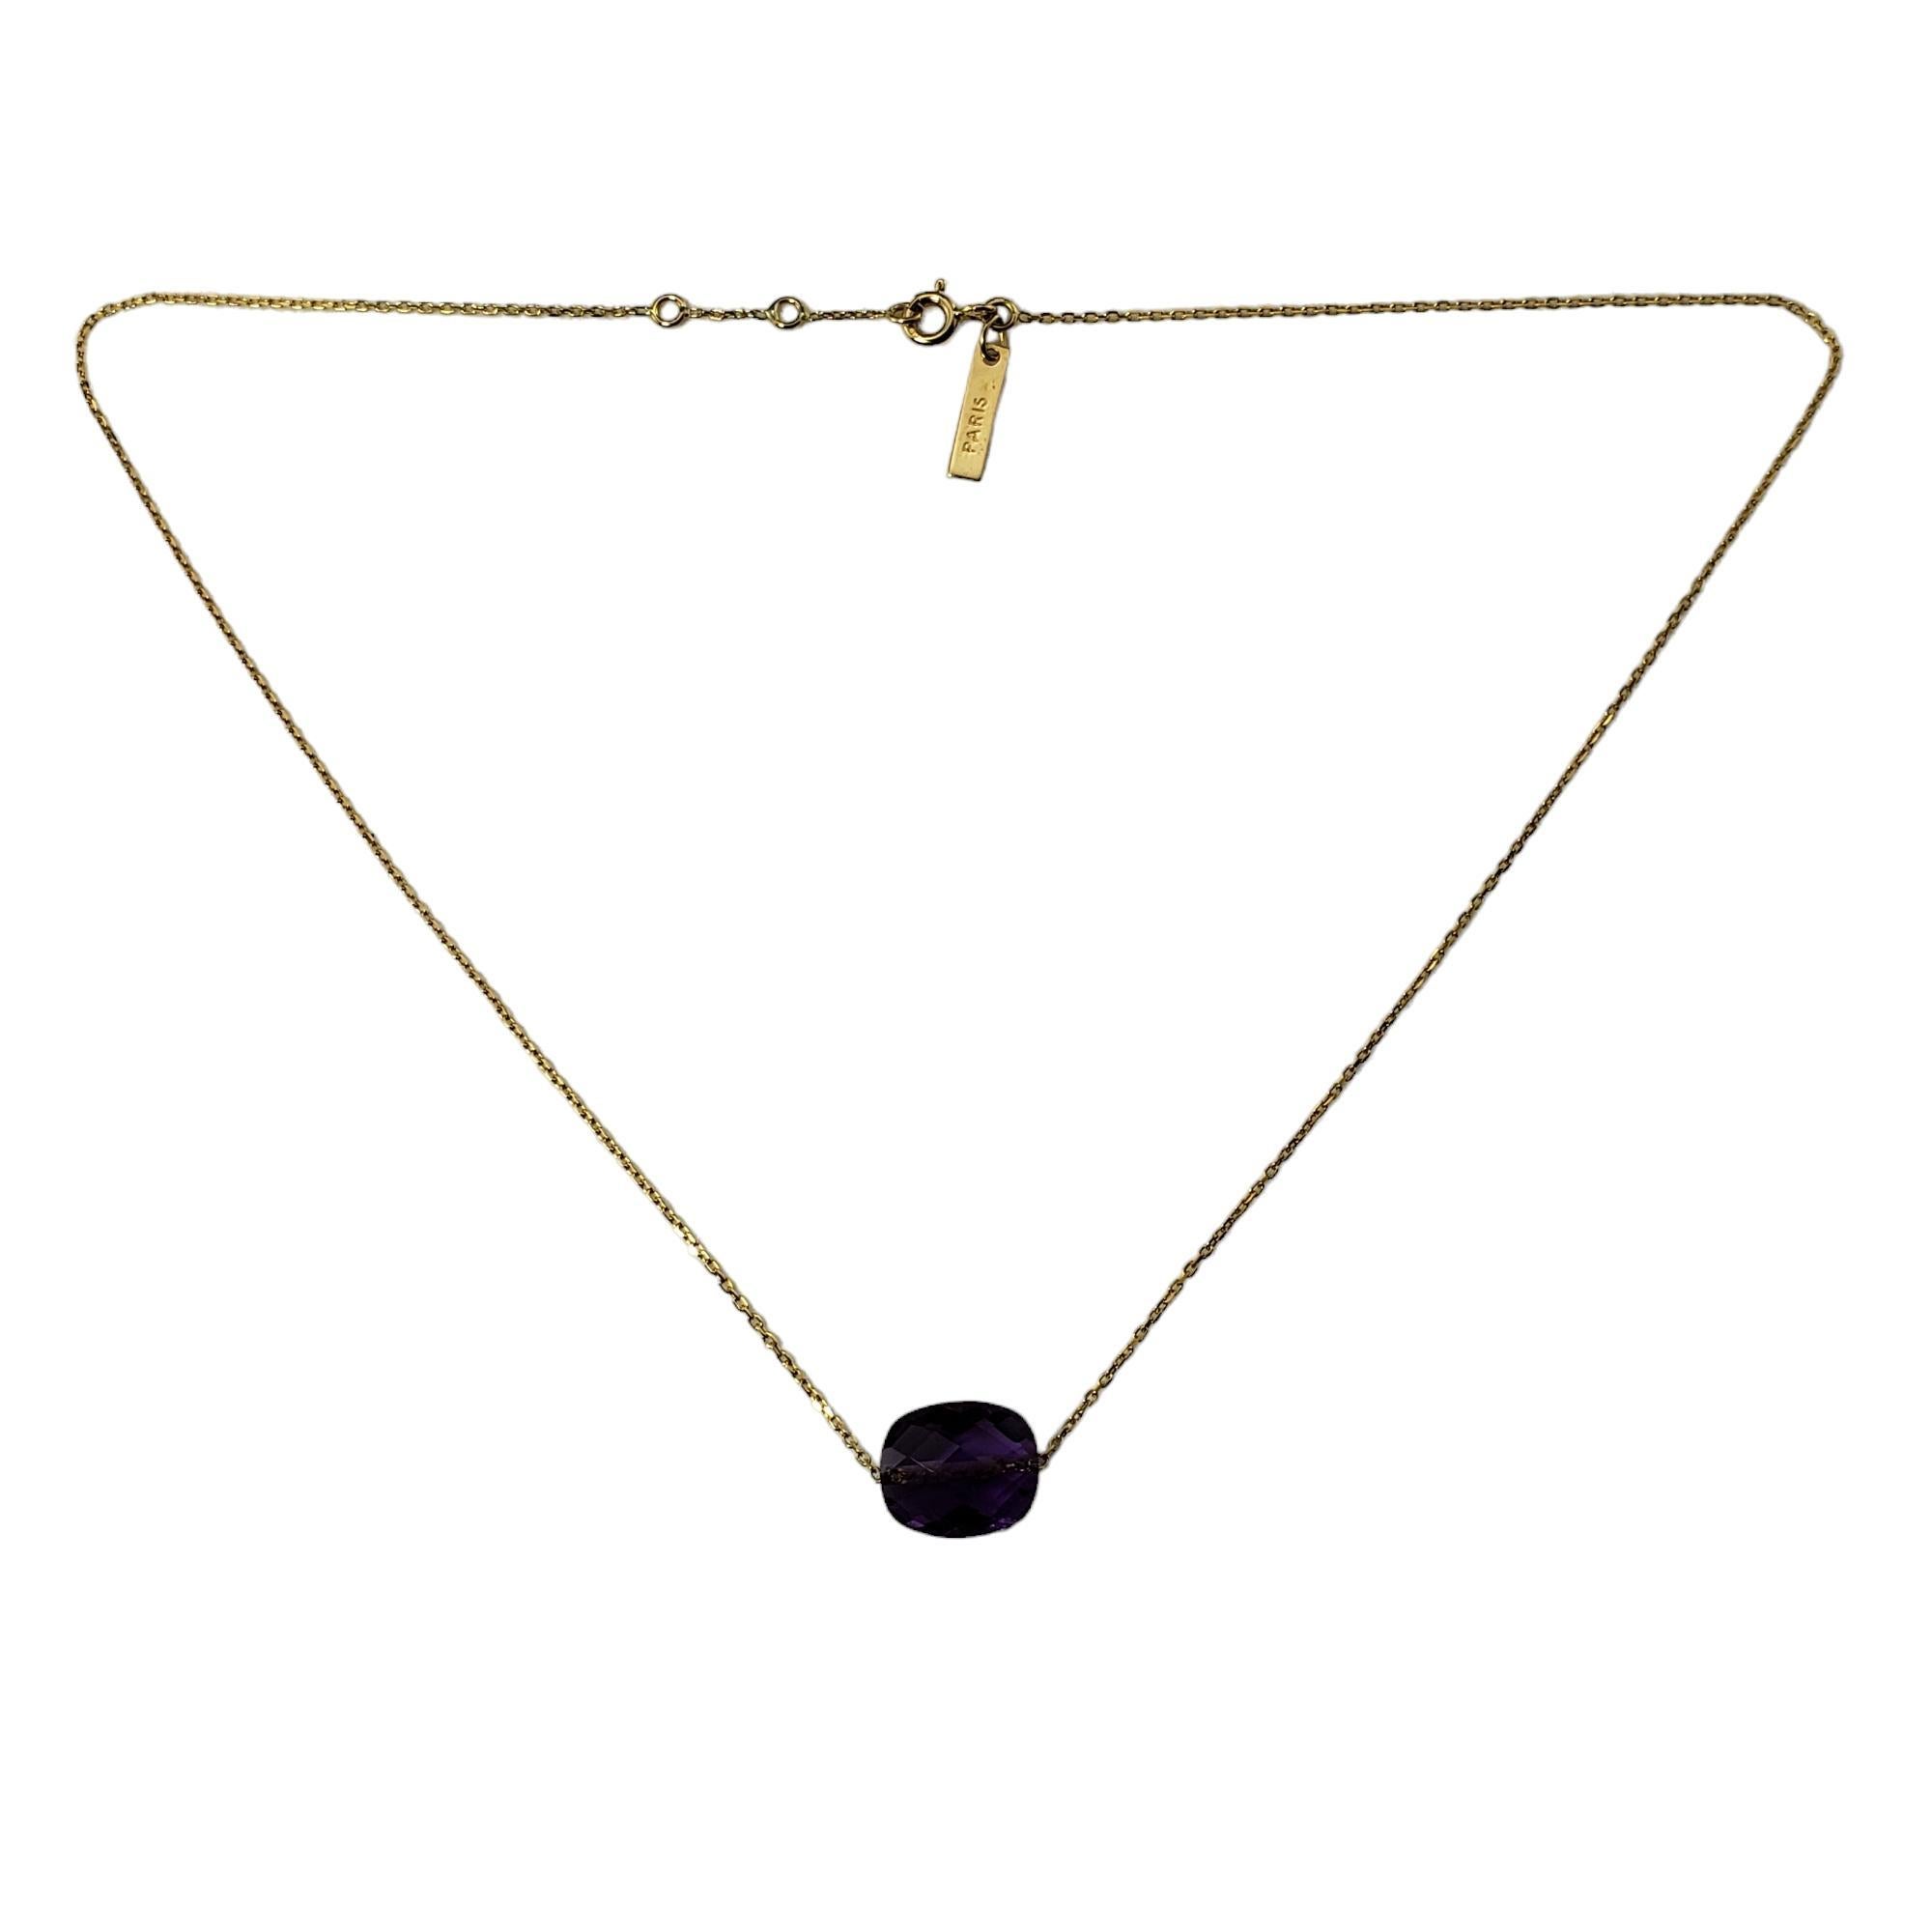 Vintage 18K Gelbgold Amethyst Halskette-

Dieser schöne Amethyst im Kissenschliff (12,1 mm x 10 mm) ist an einer klassischen Halskette aus 18 Karat Gelbgold gefasst. 

Größe: 15,5 Zoll (einstellbar auf 15